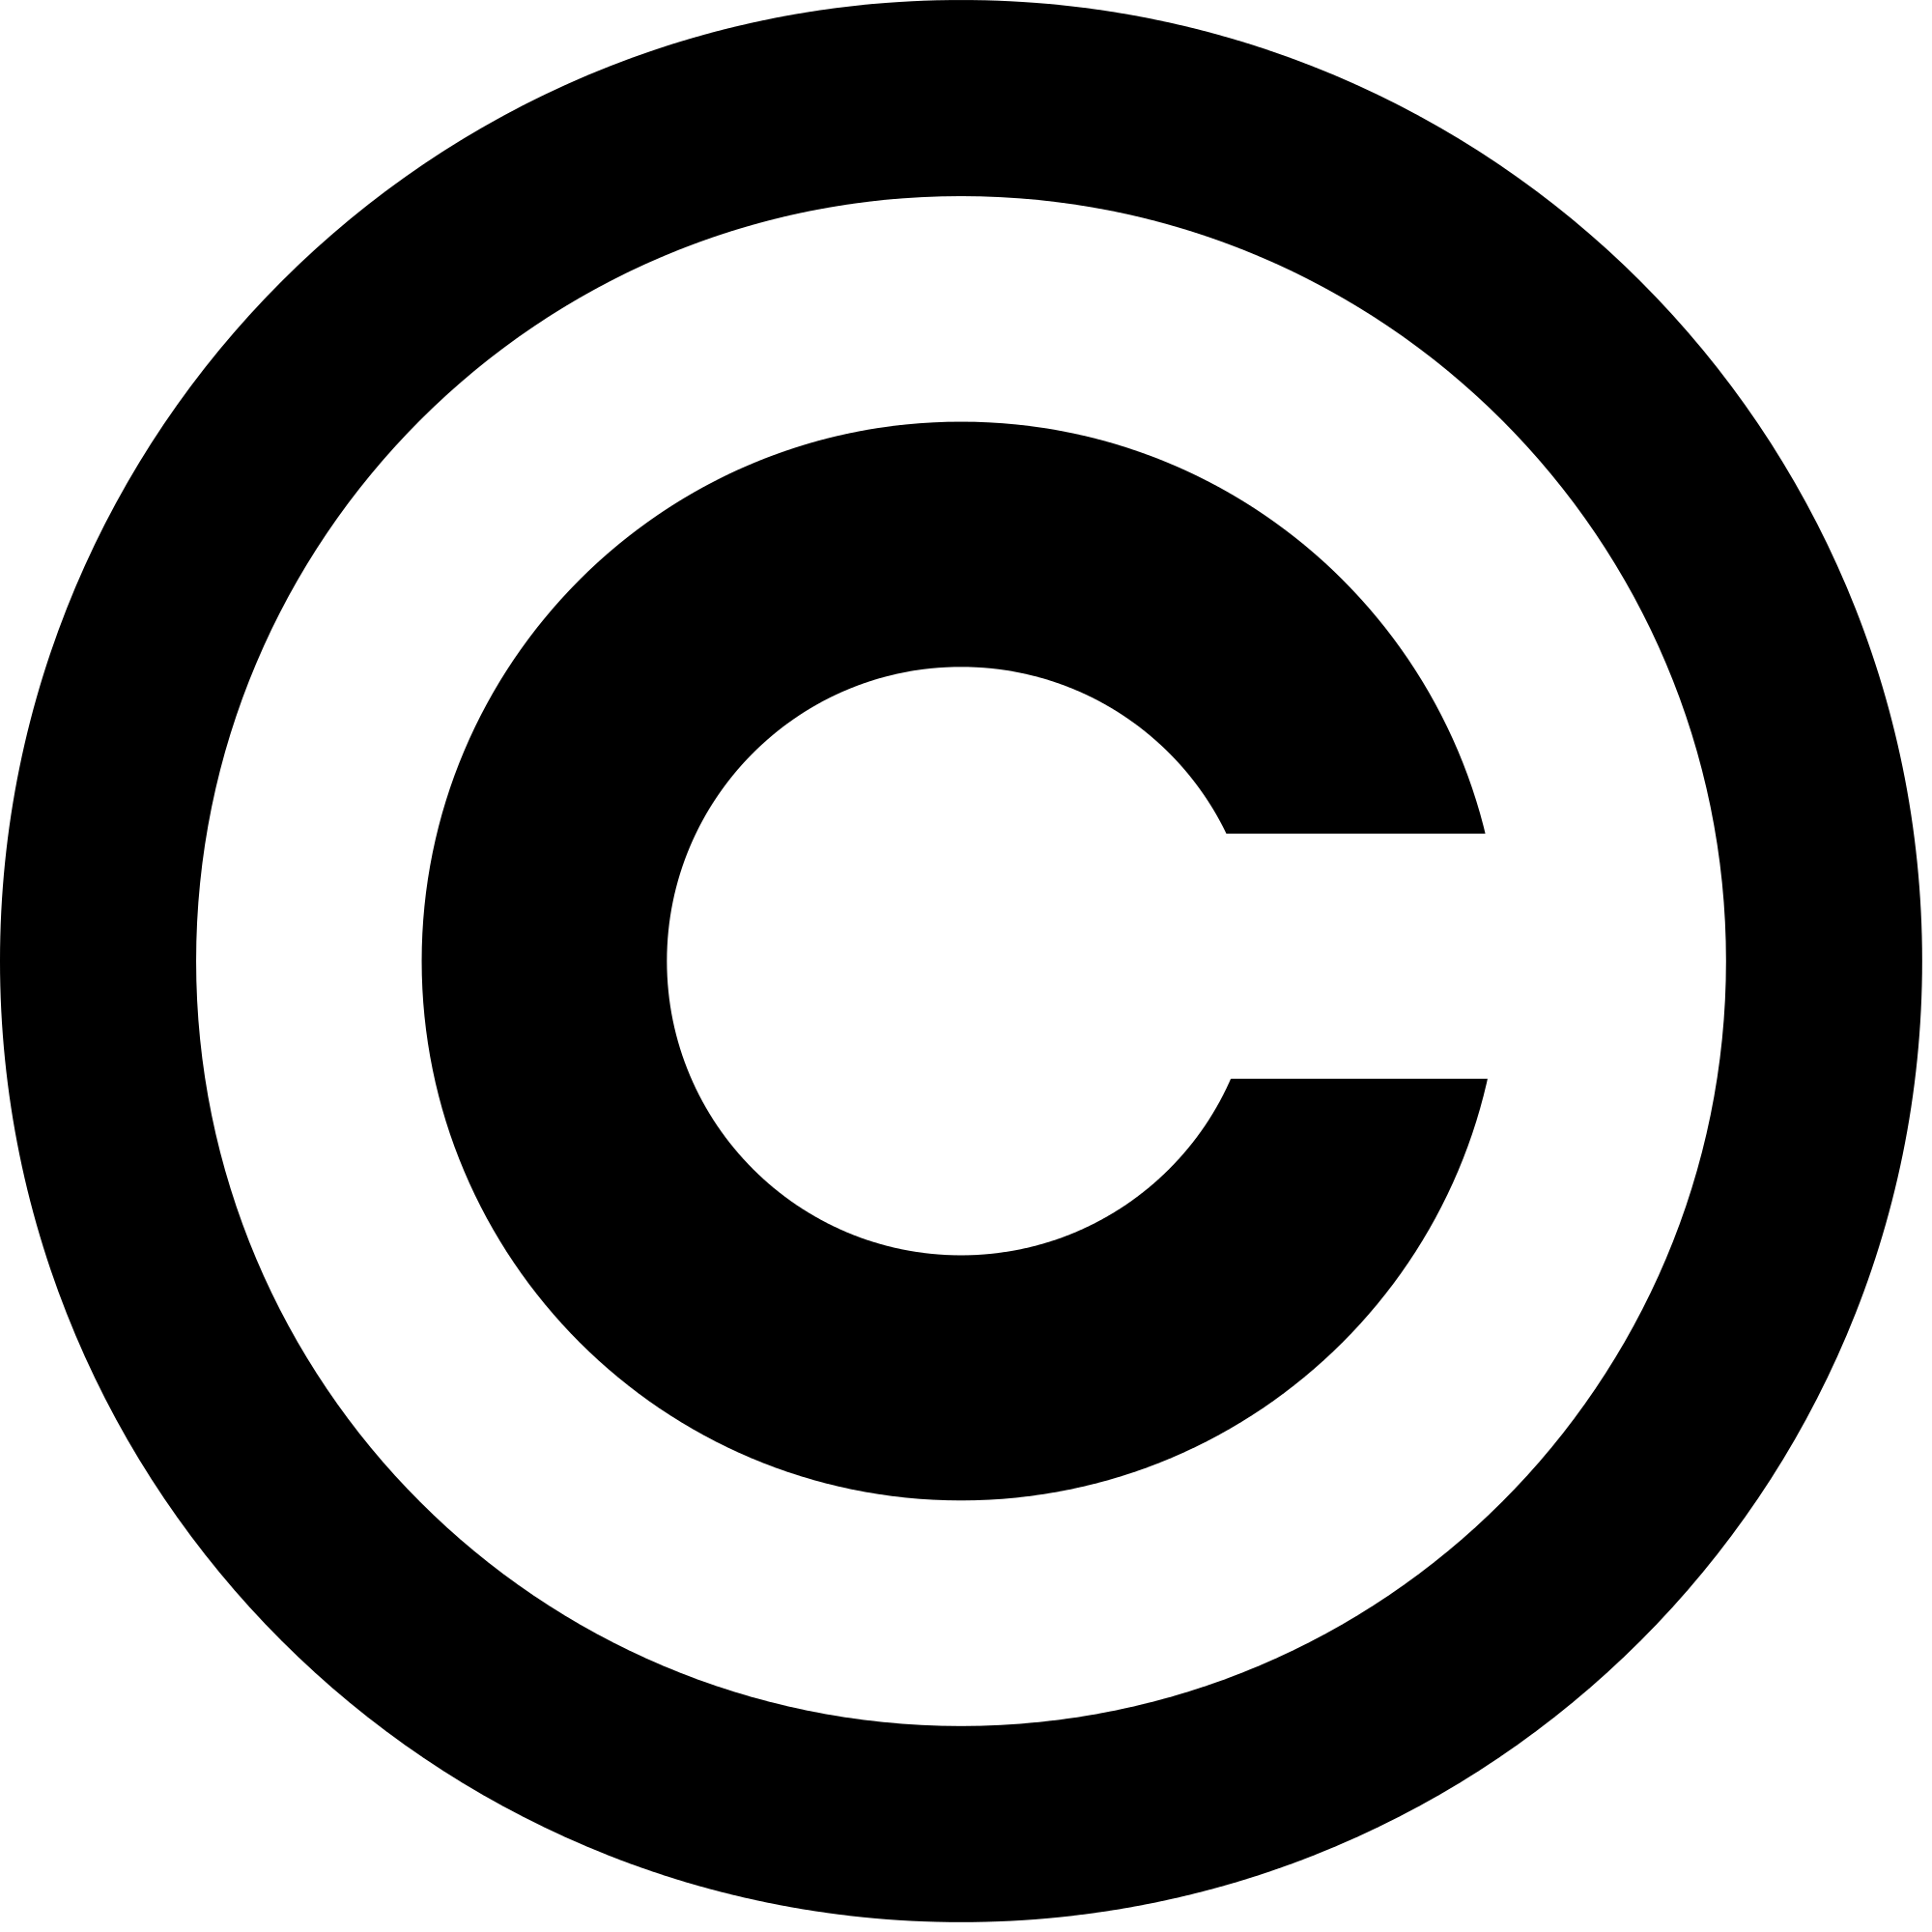 copy_right_symbol.png